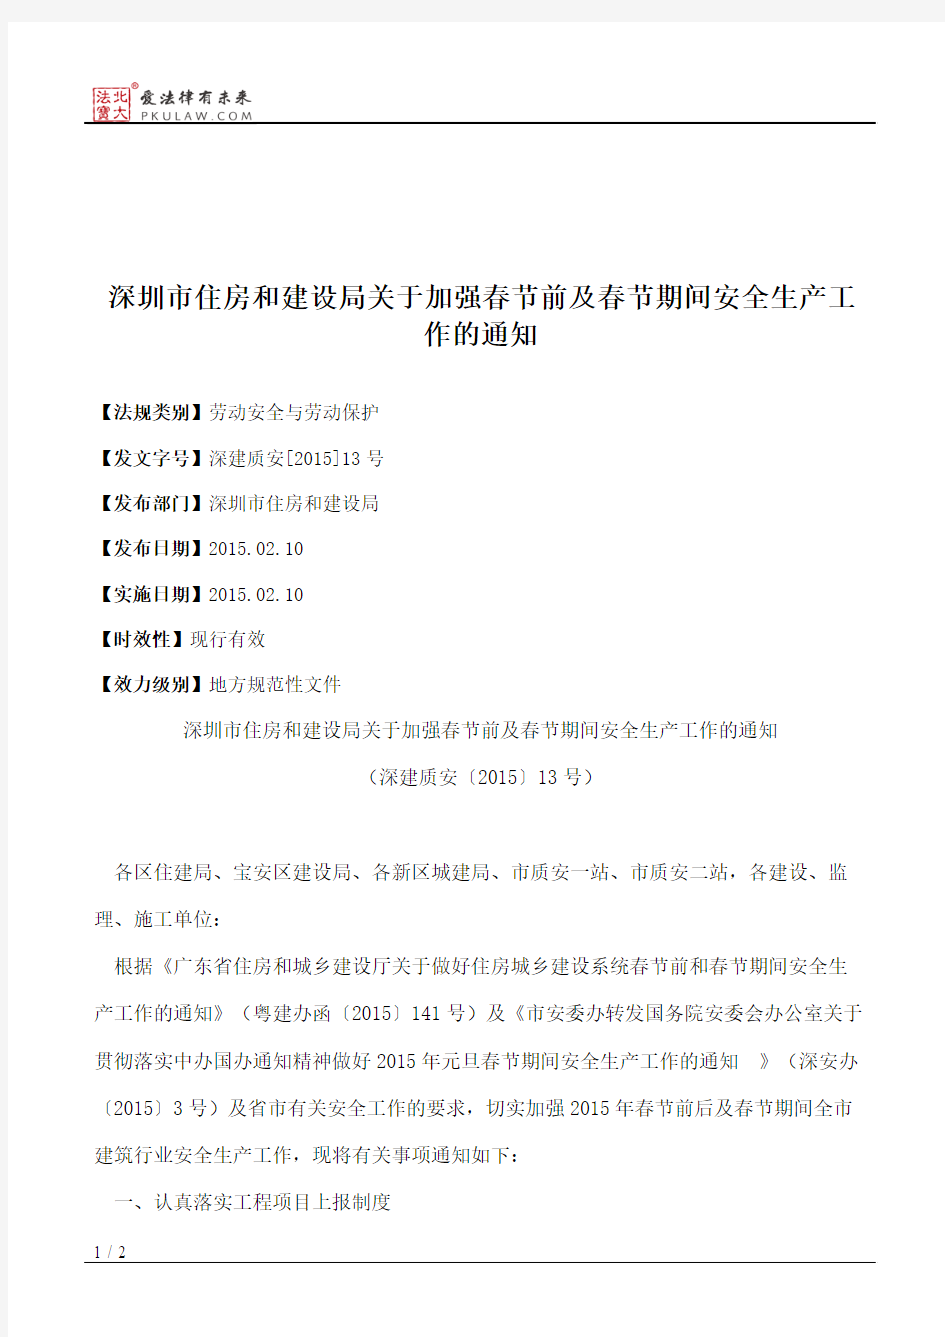 深圳市住房和建设局关于加强春节前及春节期间安全生产工作的通知